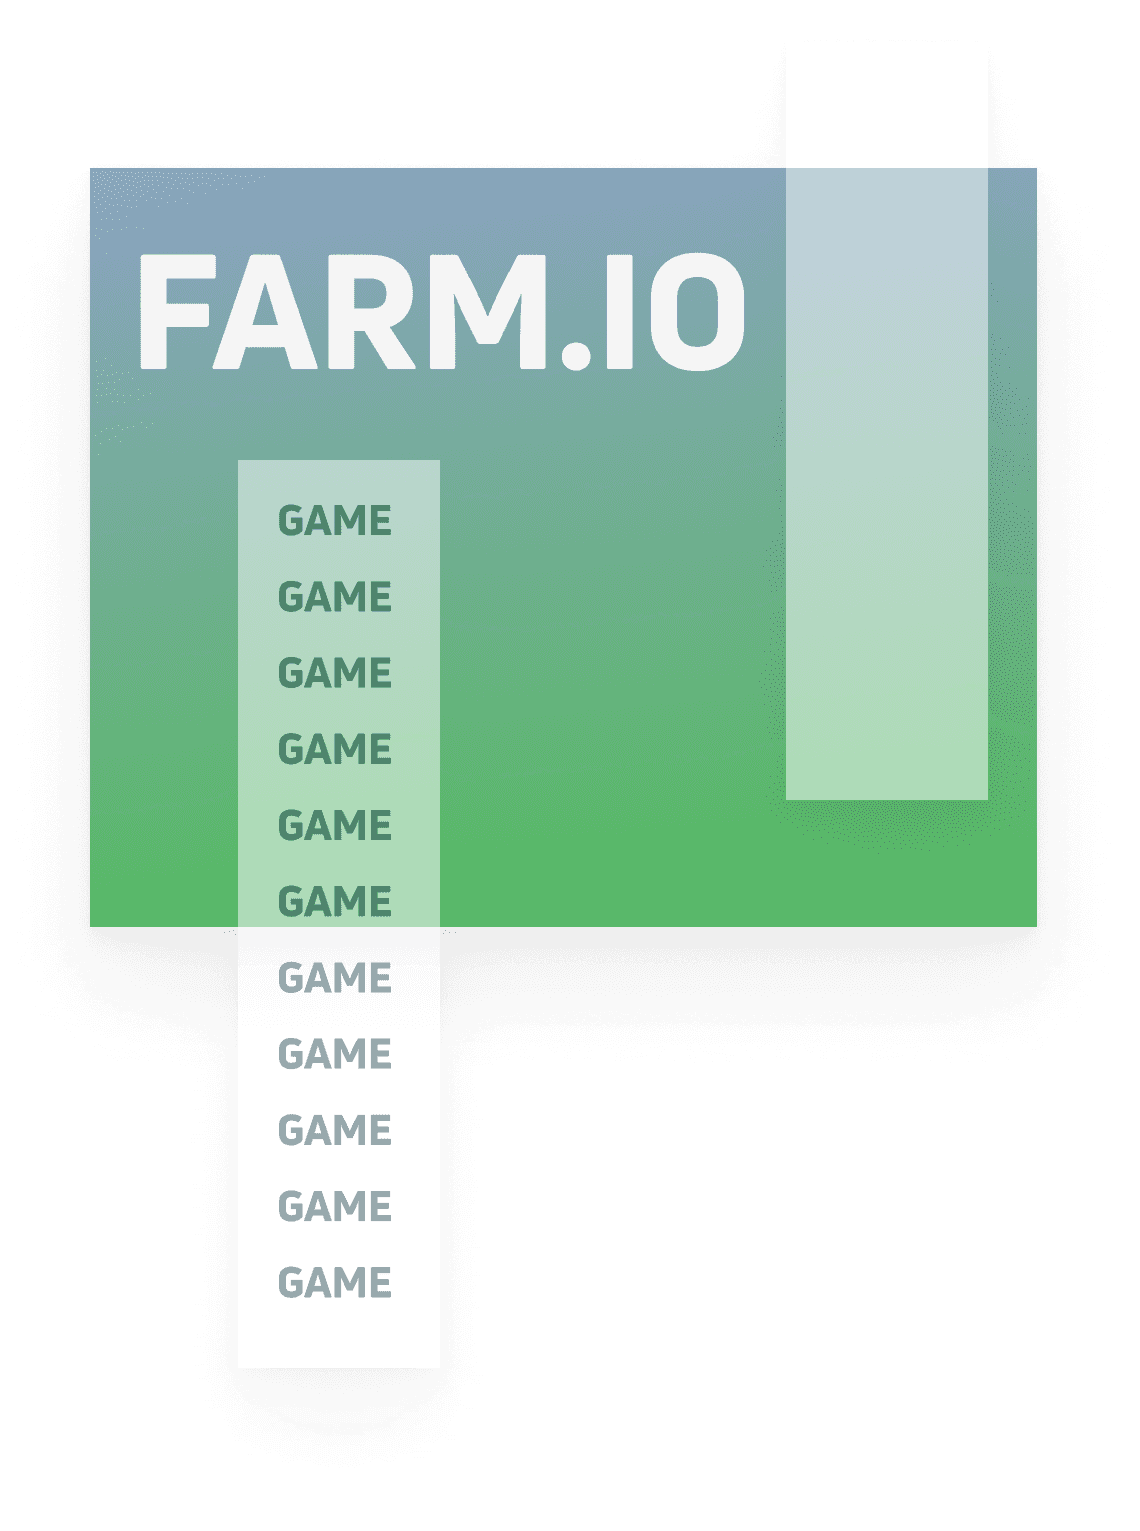 Farm.io - децентрализованное веб-приложение для проведения киберспортивных матчей и турниров по Dota 2.